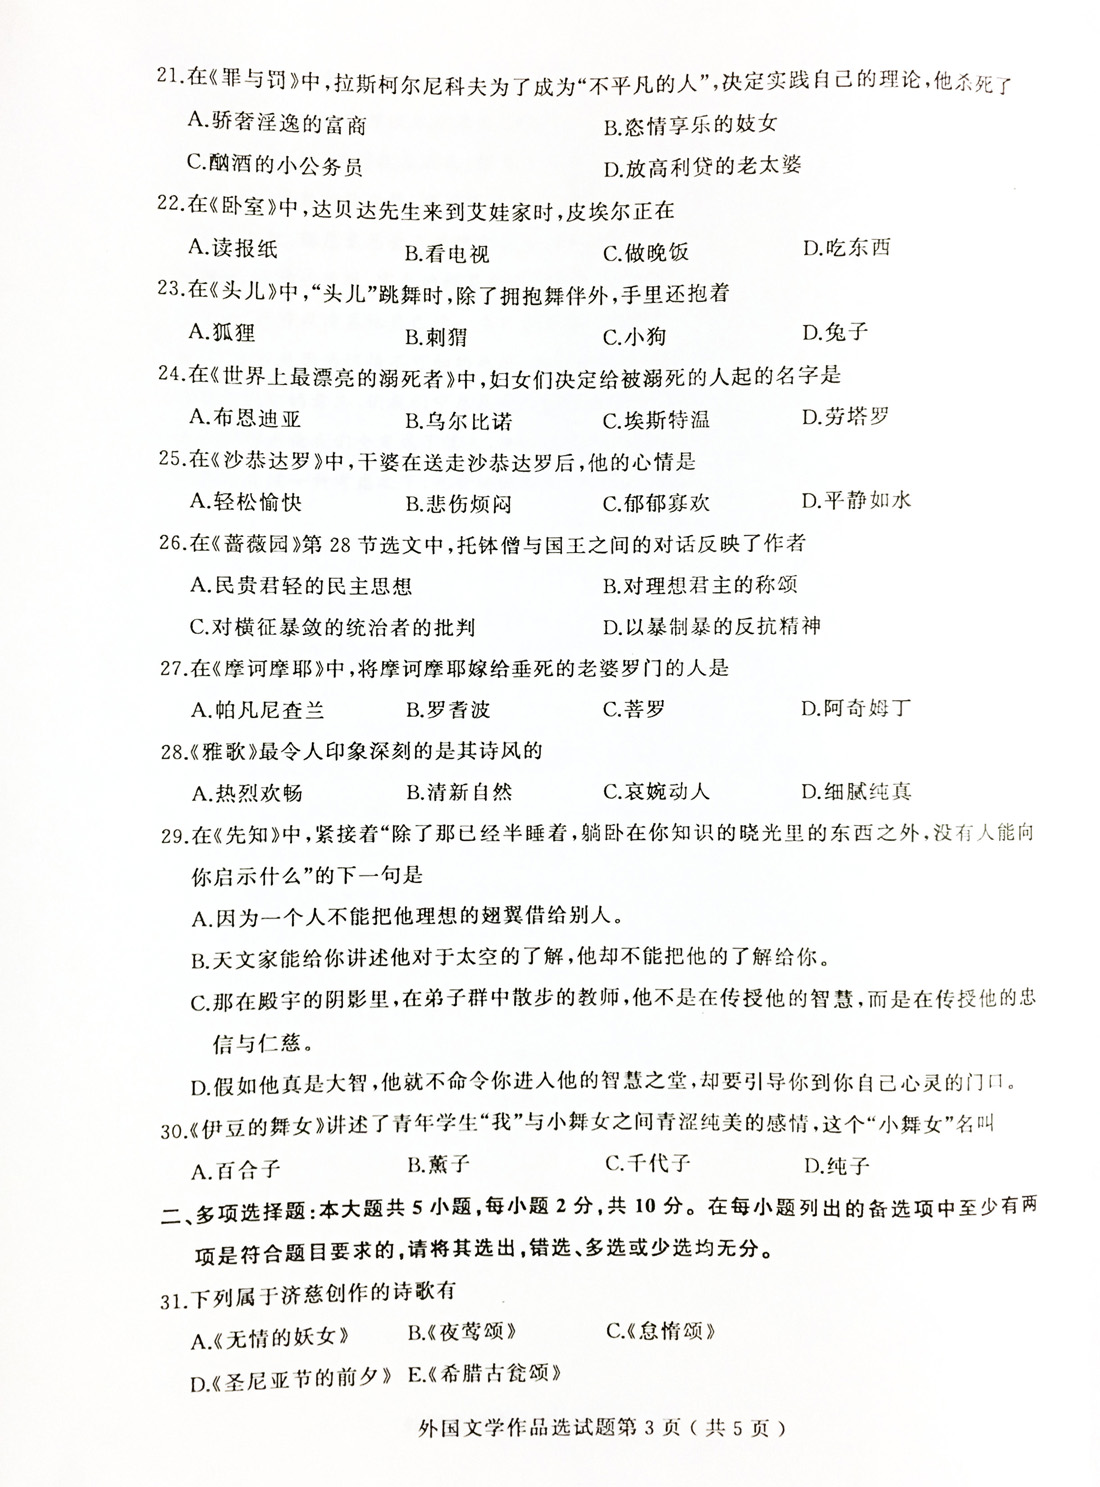 2019年04月贵州省自学考试00534外国文学作品选试题及答案